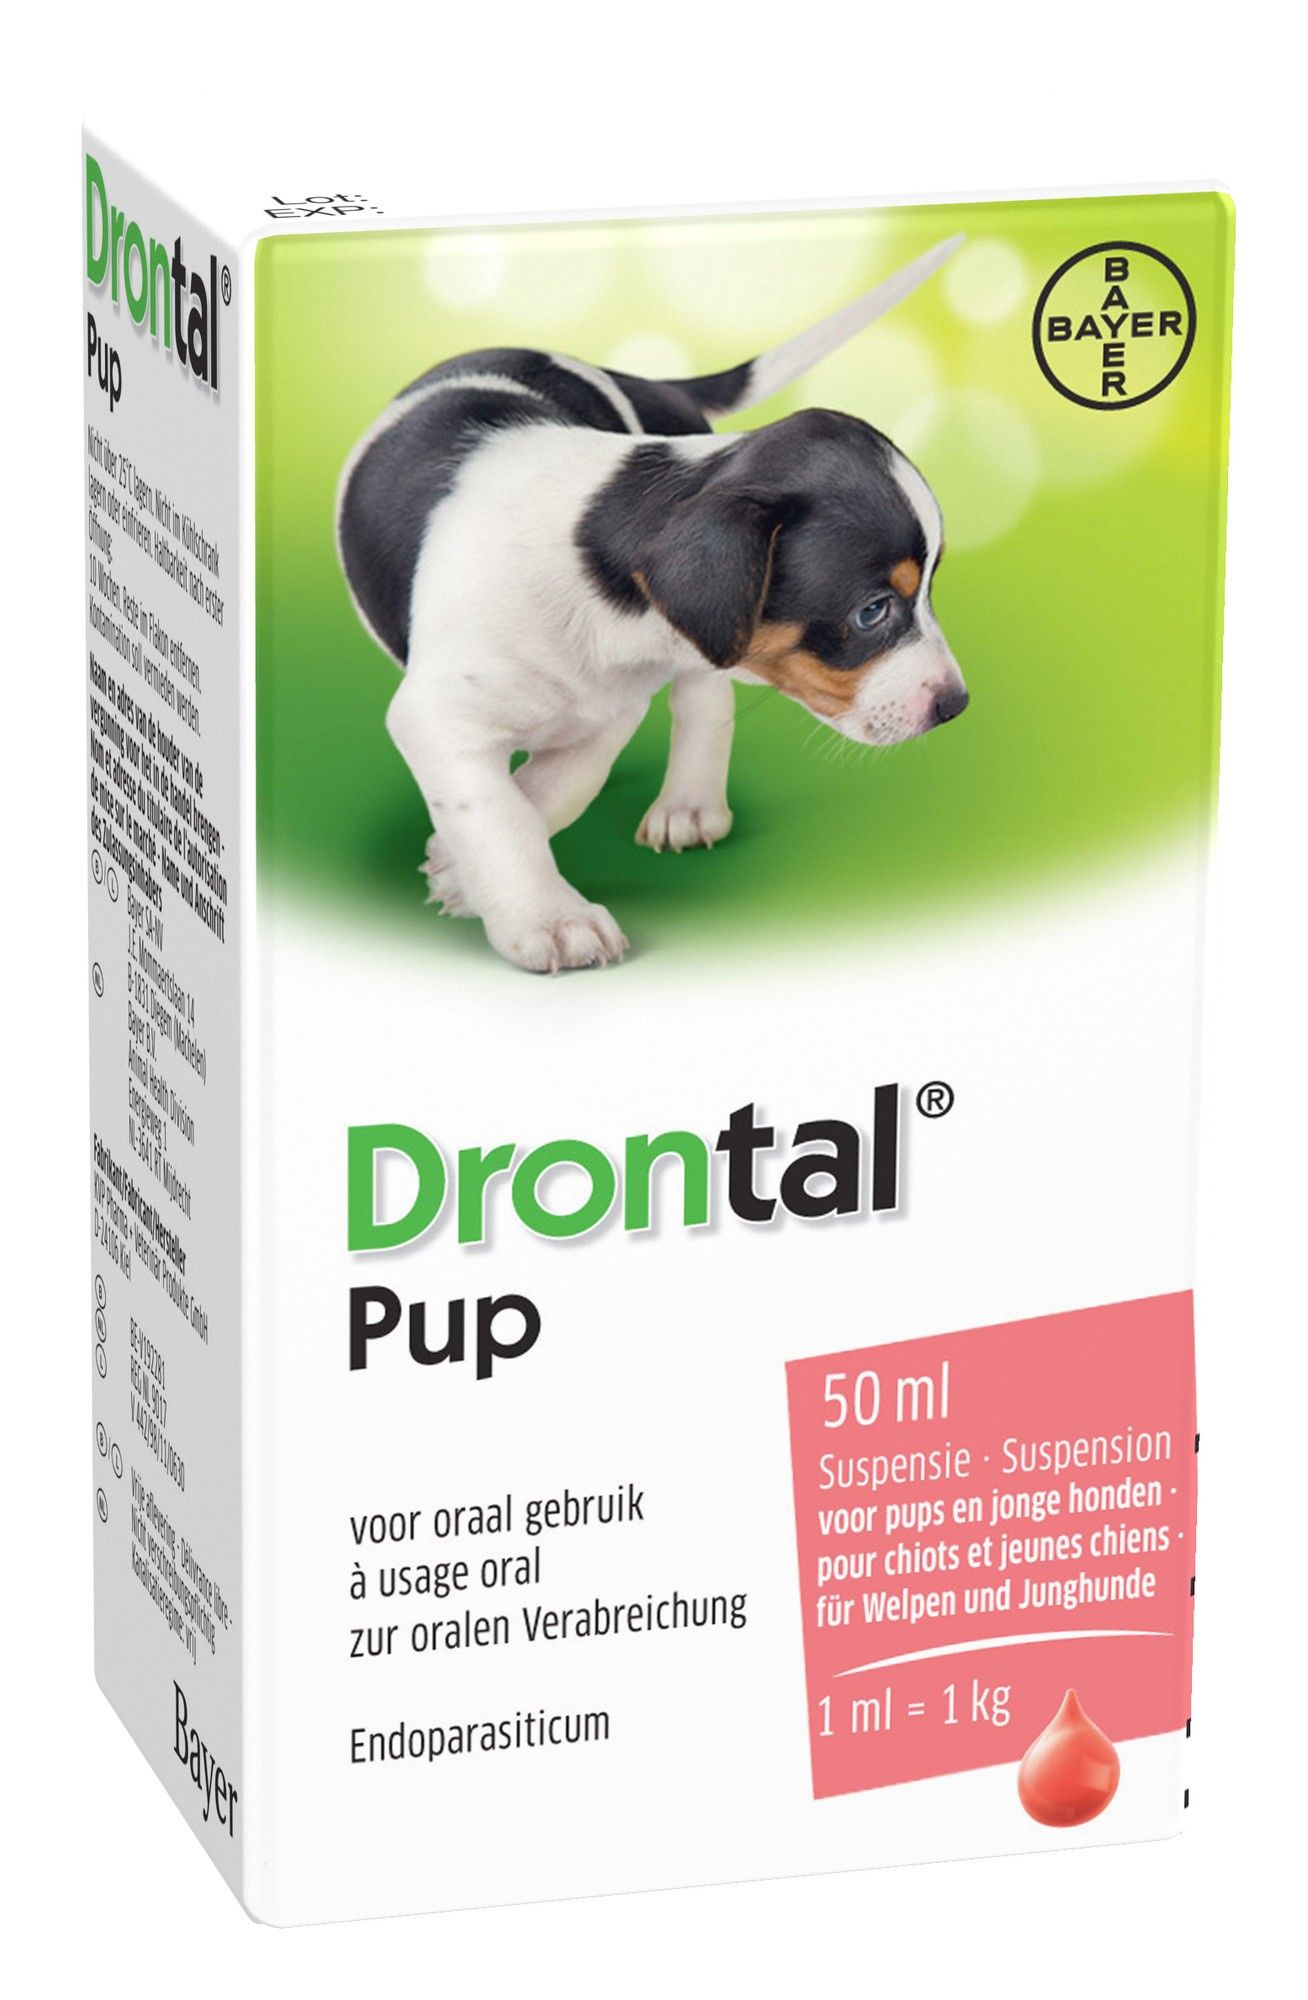 Verzwakken schoorsteen schending Drontal Ontworming Pup 50ml | VoorMijnDier